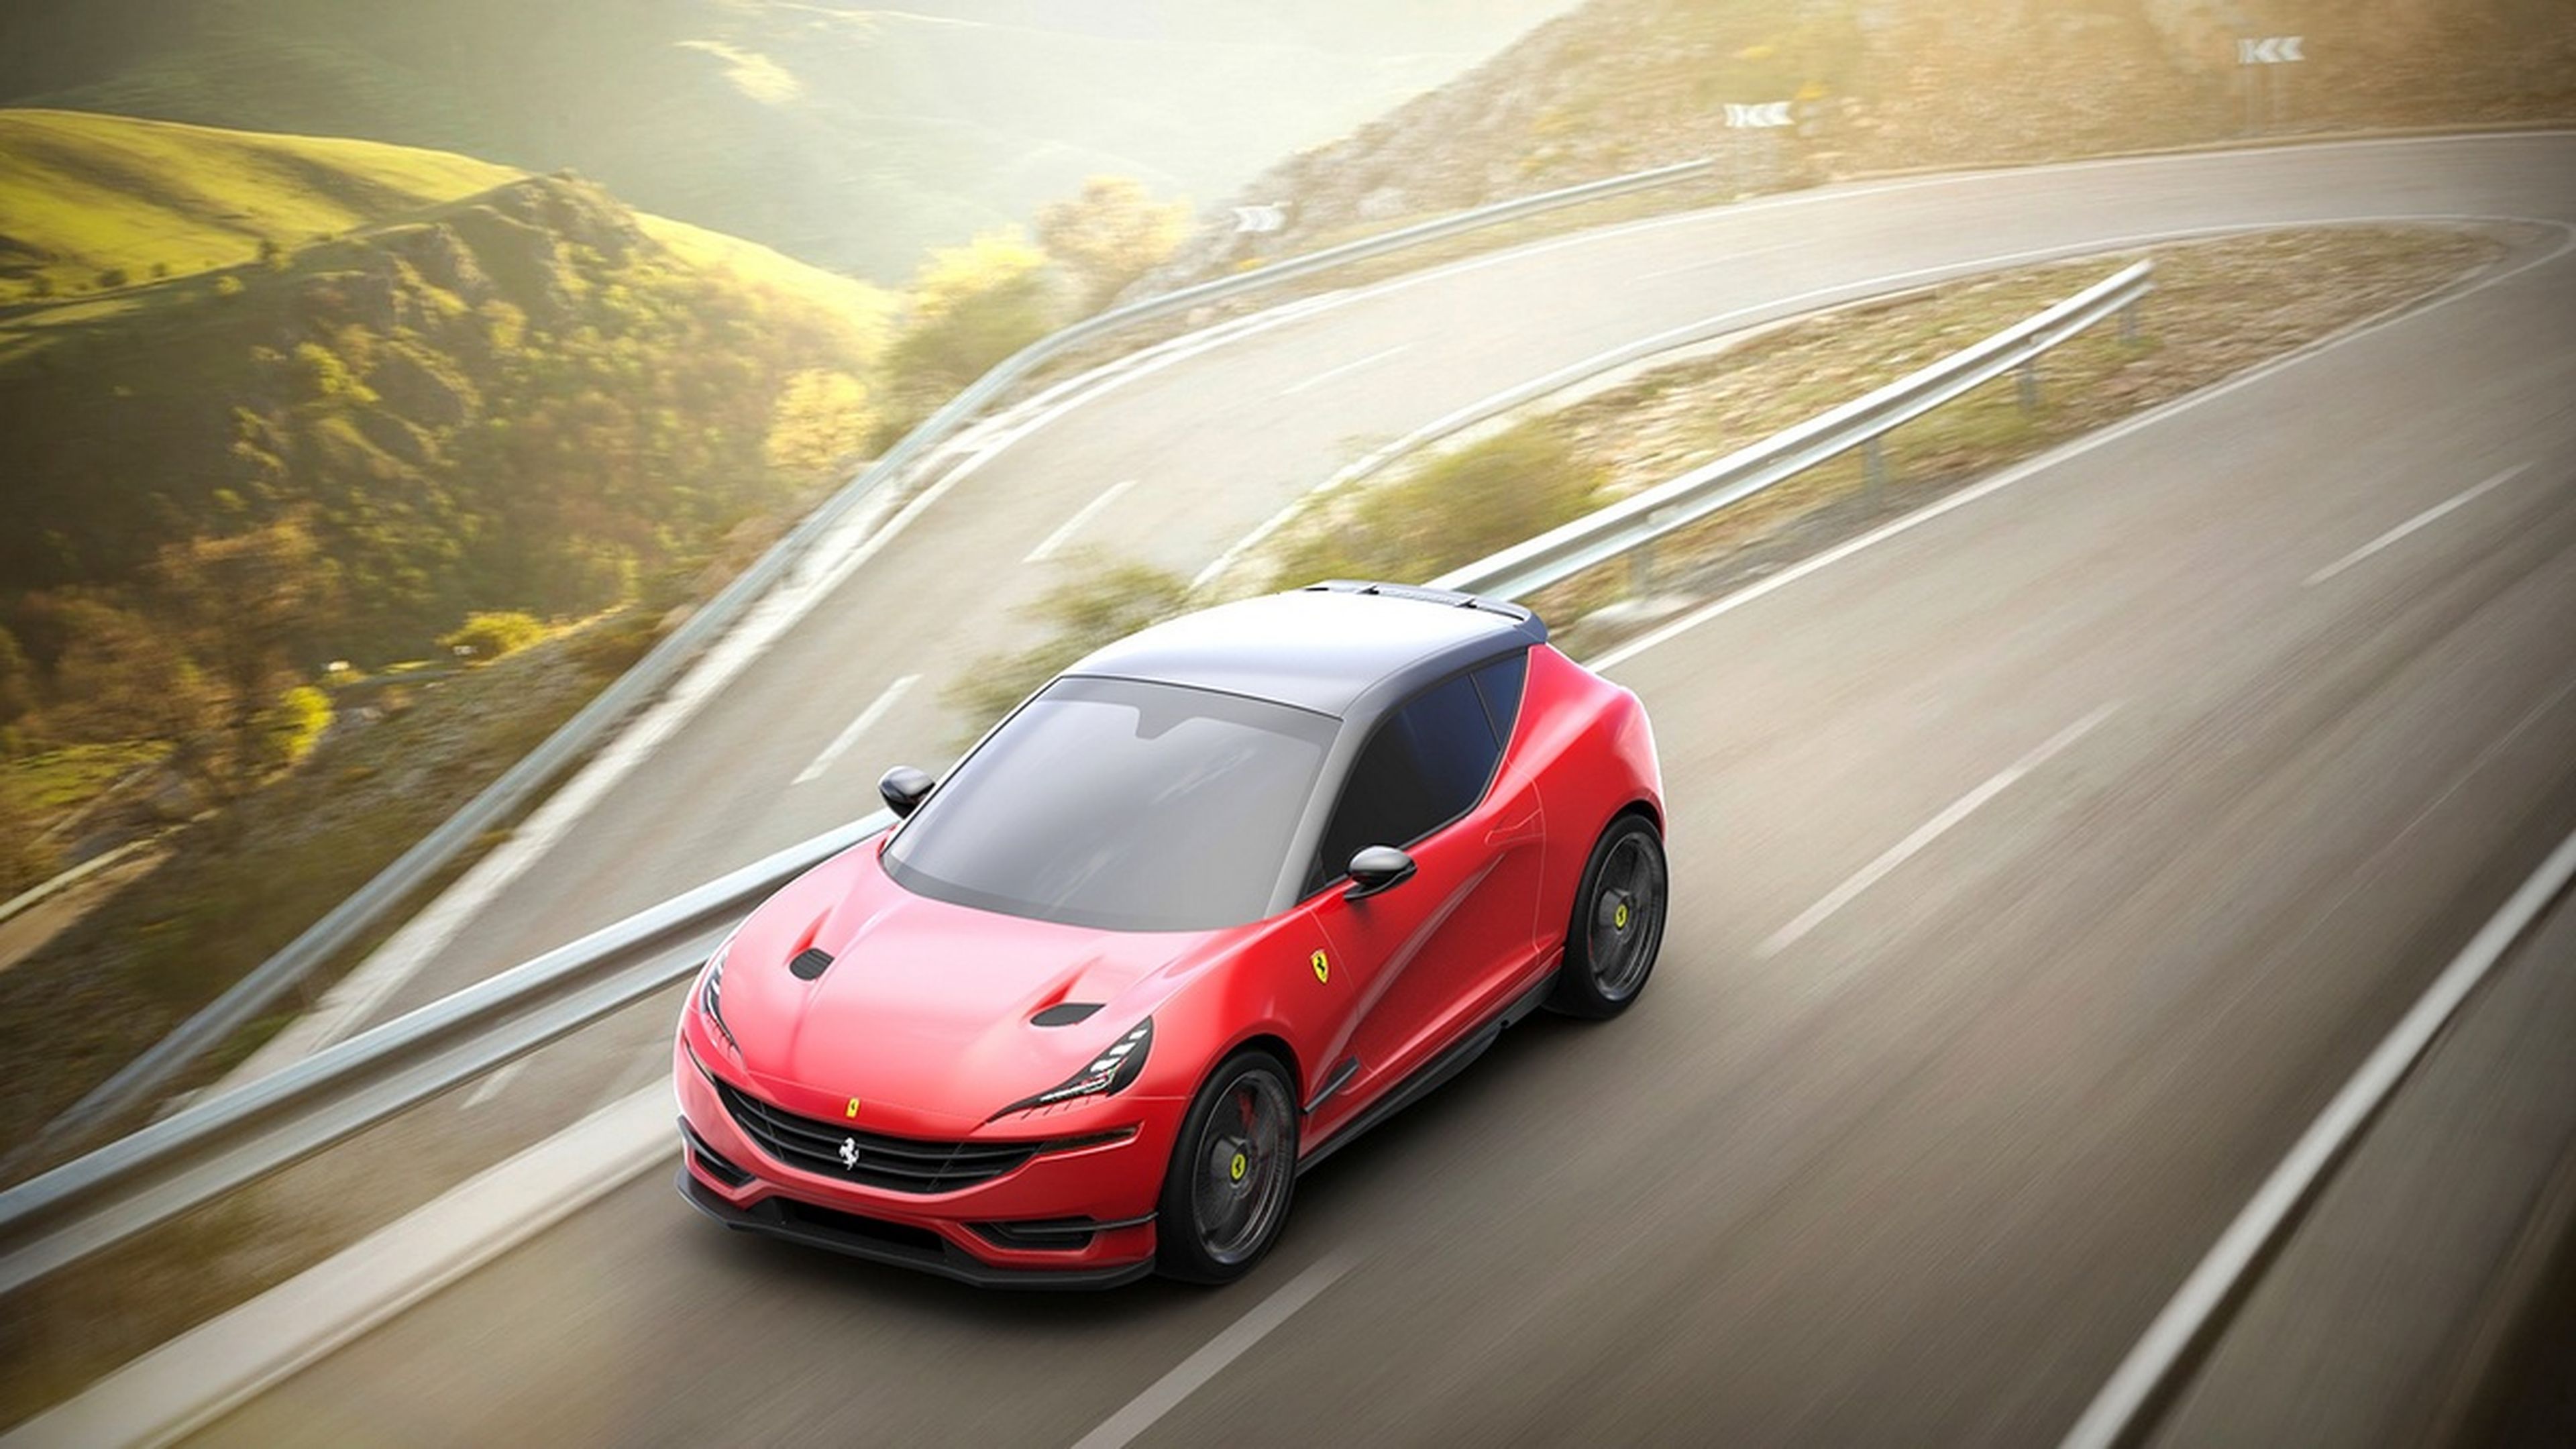 ¿Cómo sería un Ferrari compacto? Aquí lo tienes...